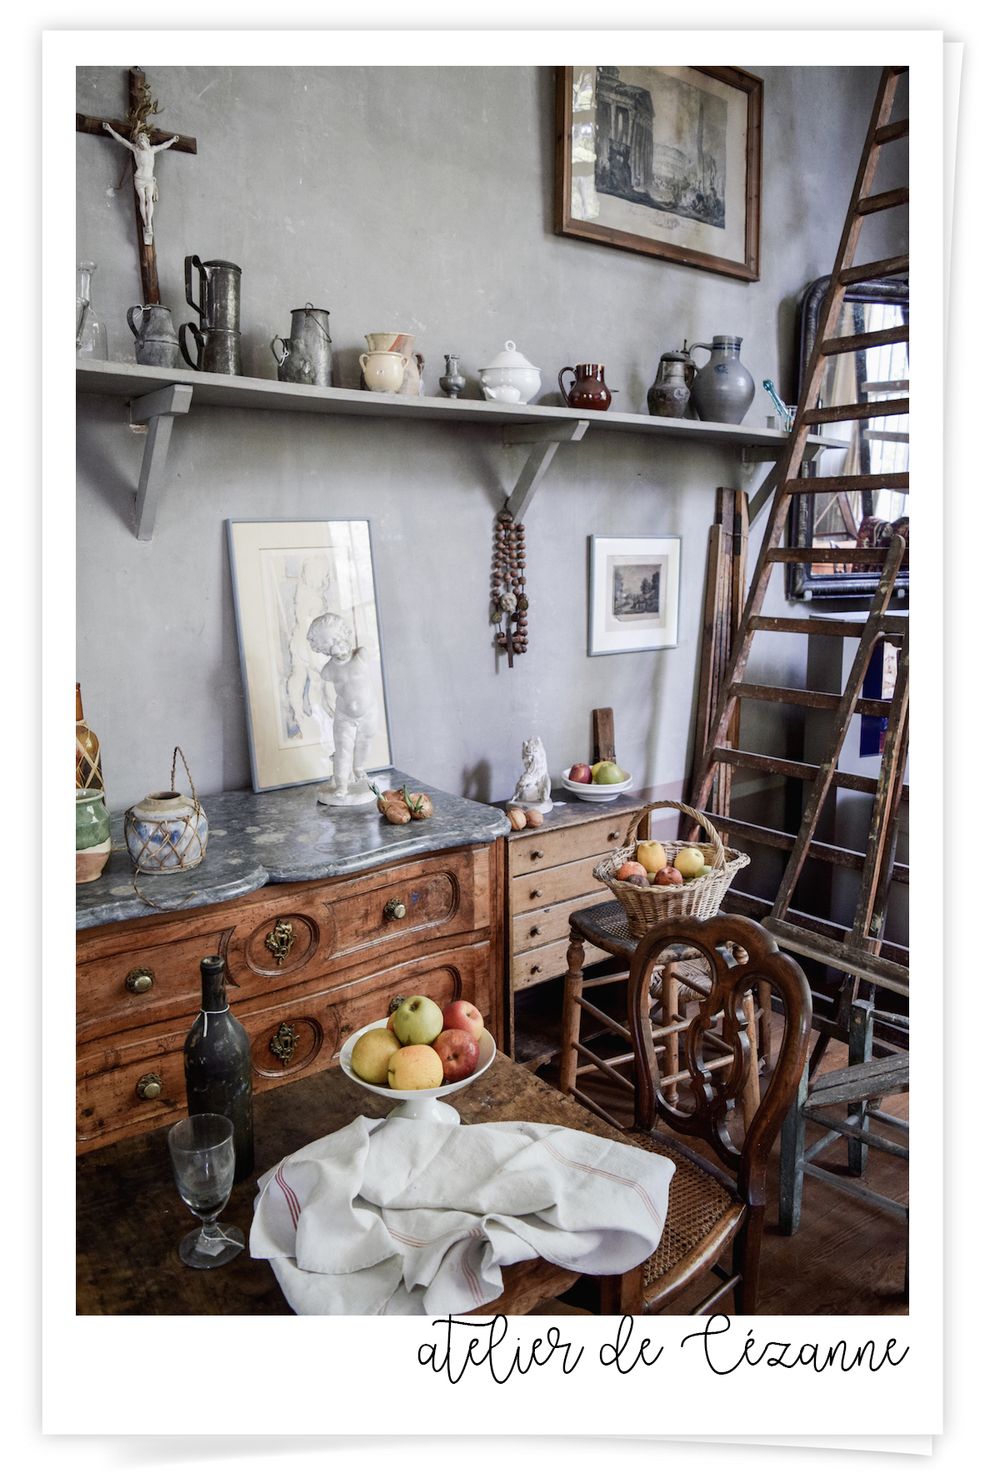 Paul Cézanne's Studio, Aix-en-Provence, France